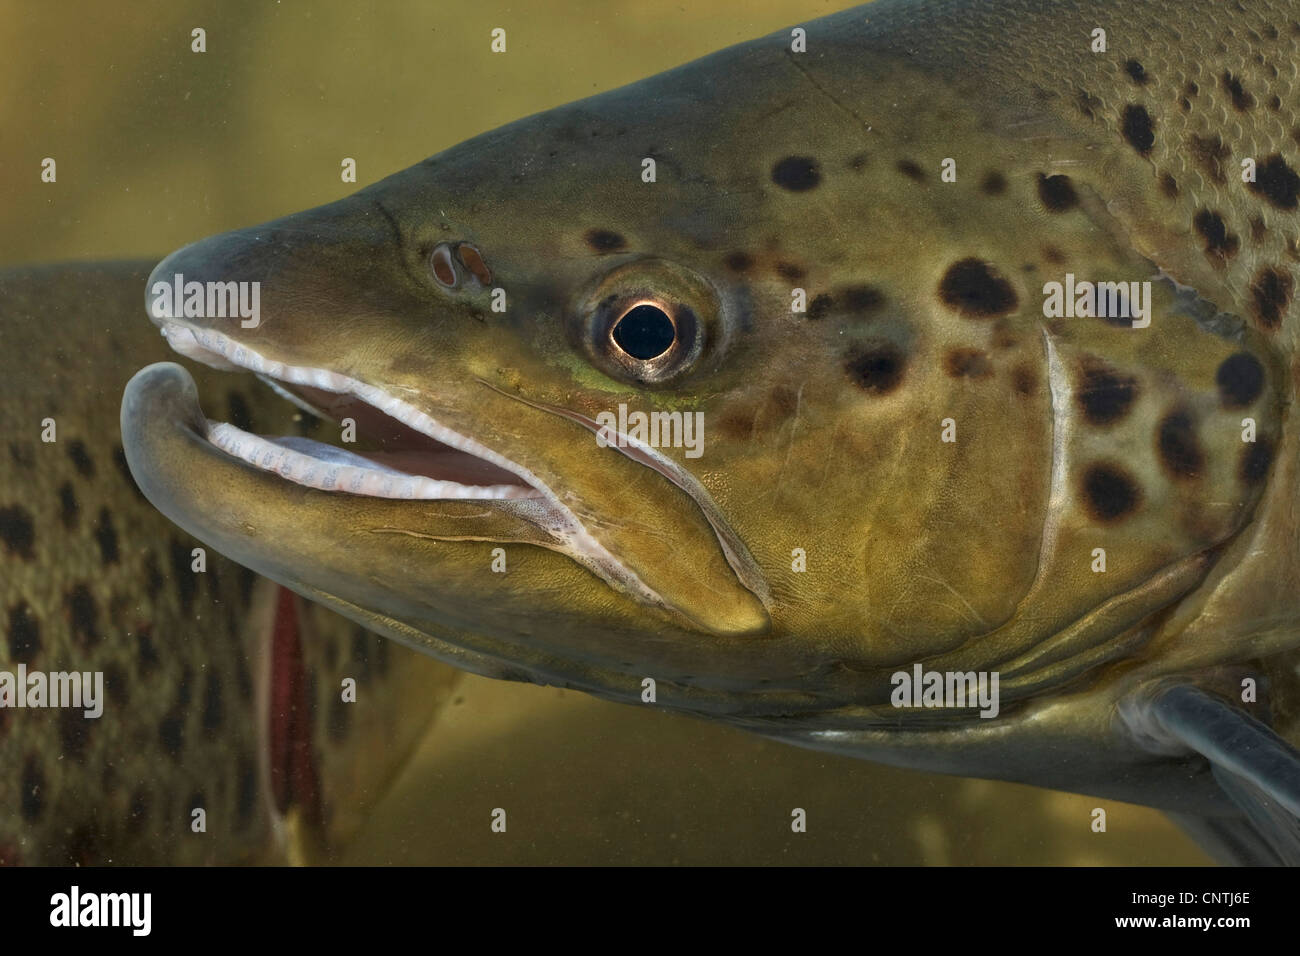 lake trout (Salmo trutta lacustris), portrait of a male, Germany Stock Photo